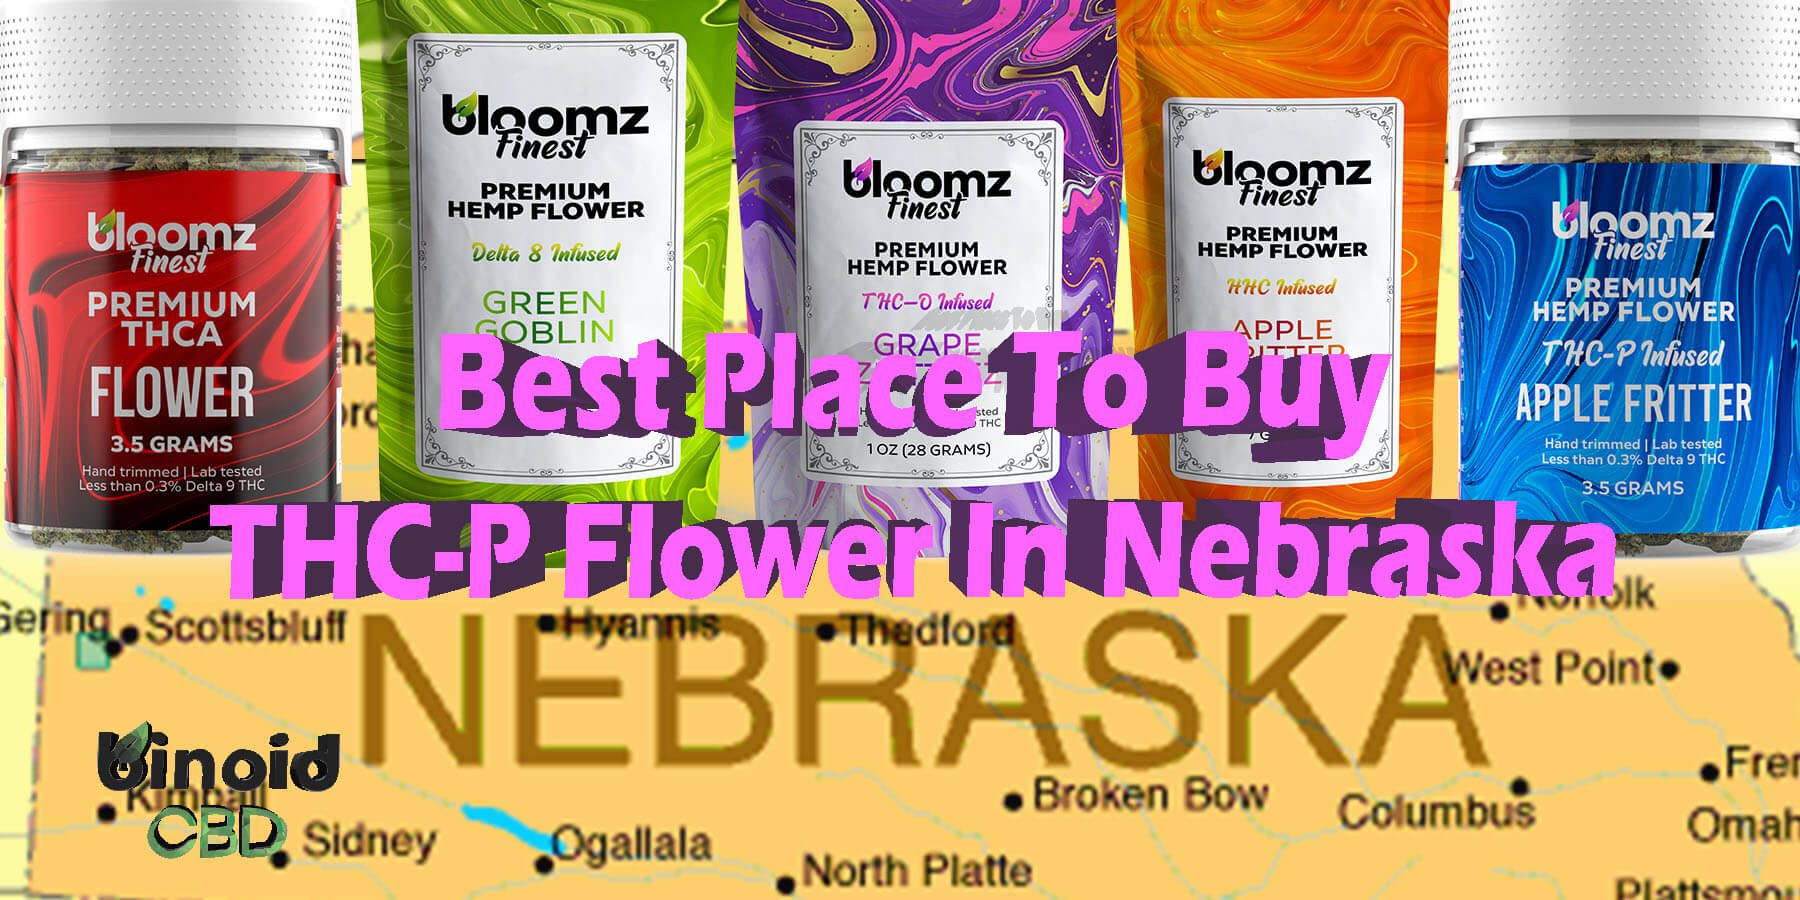 Buy THCP Flower Nebraska Get Online Near Me For Sale Best Brand Strongest Real Legal Store Shop Reddit